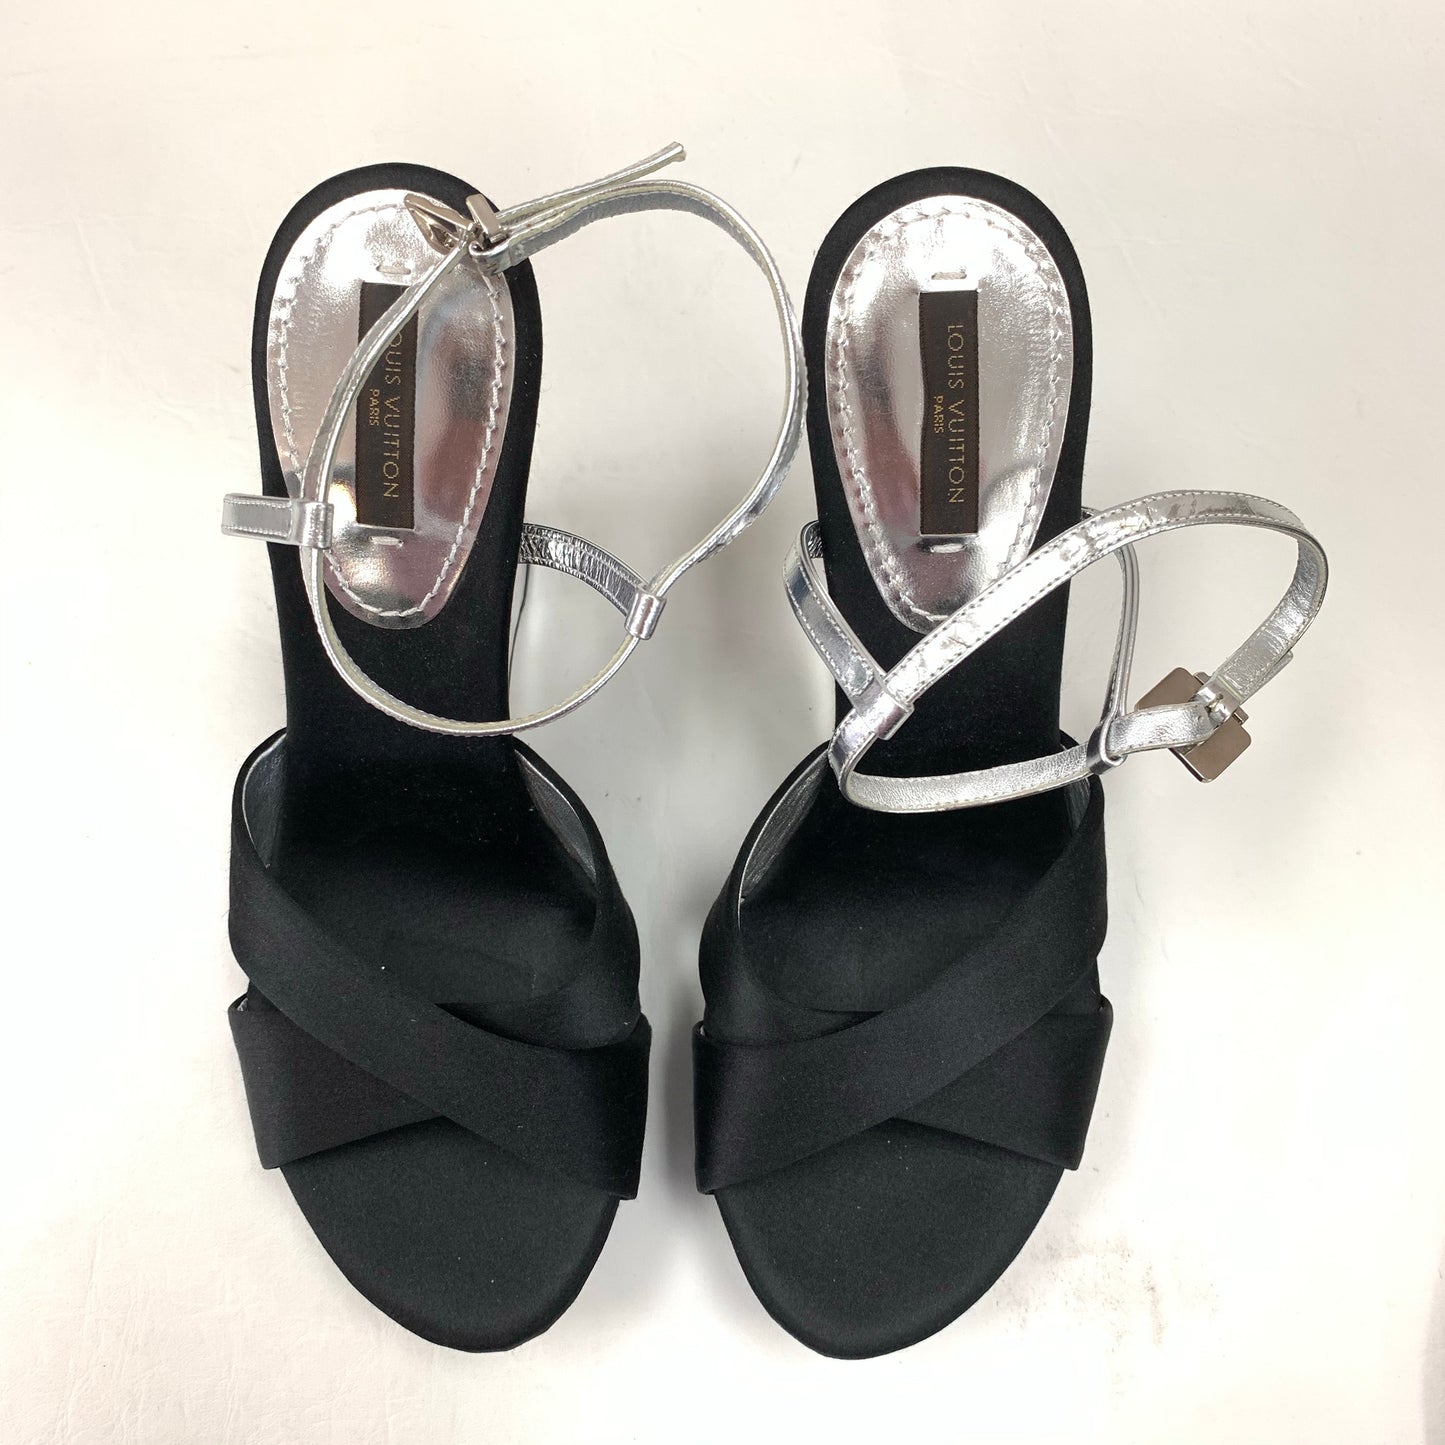 Authentic Louis Vuitton Teal/Silver/Black Sandals